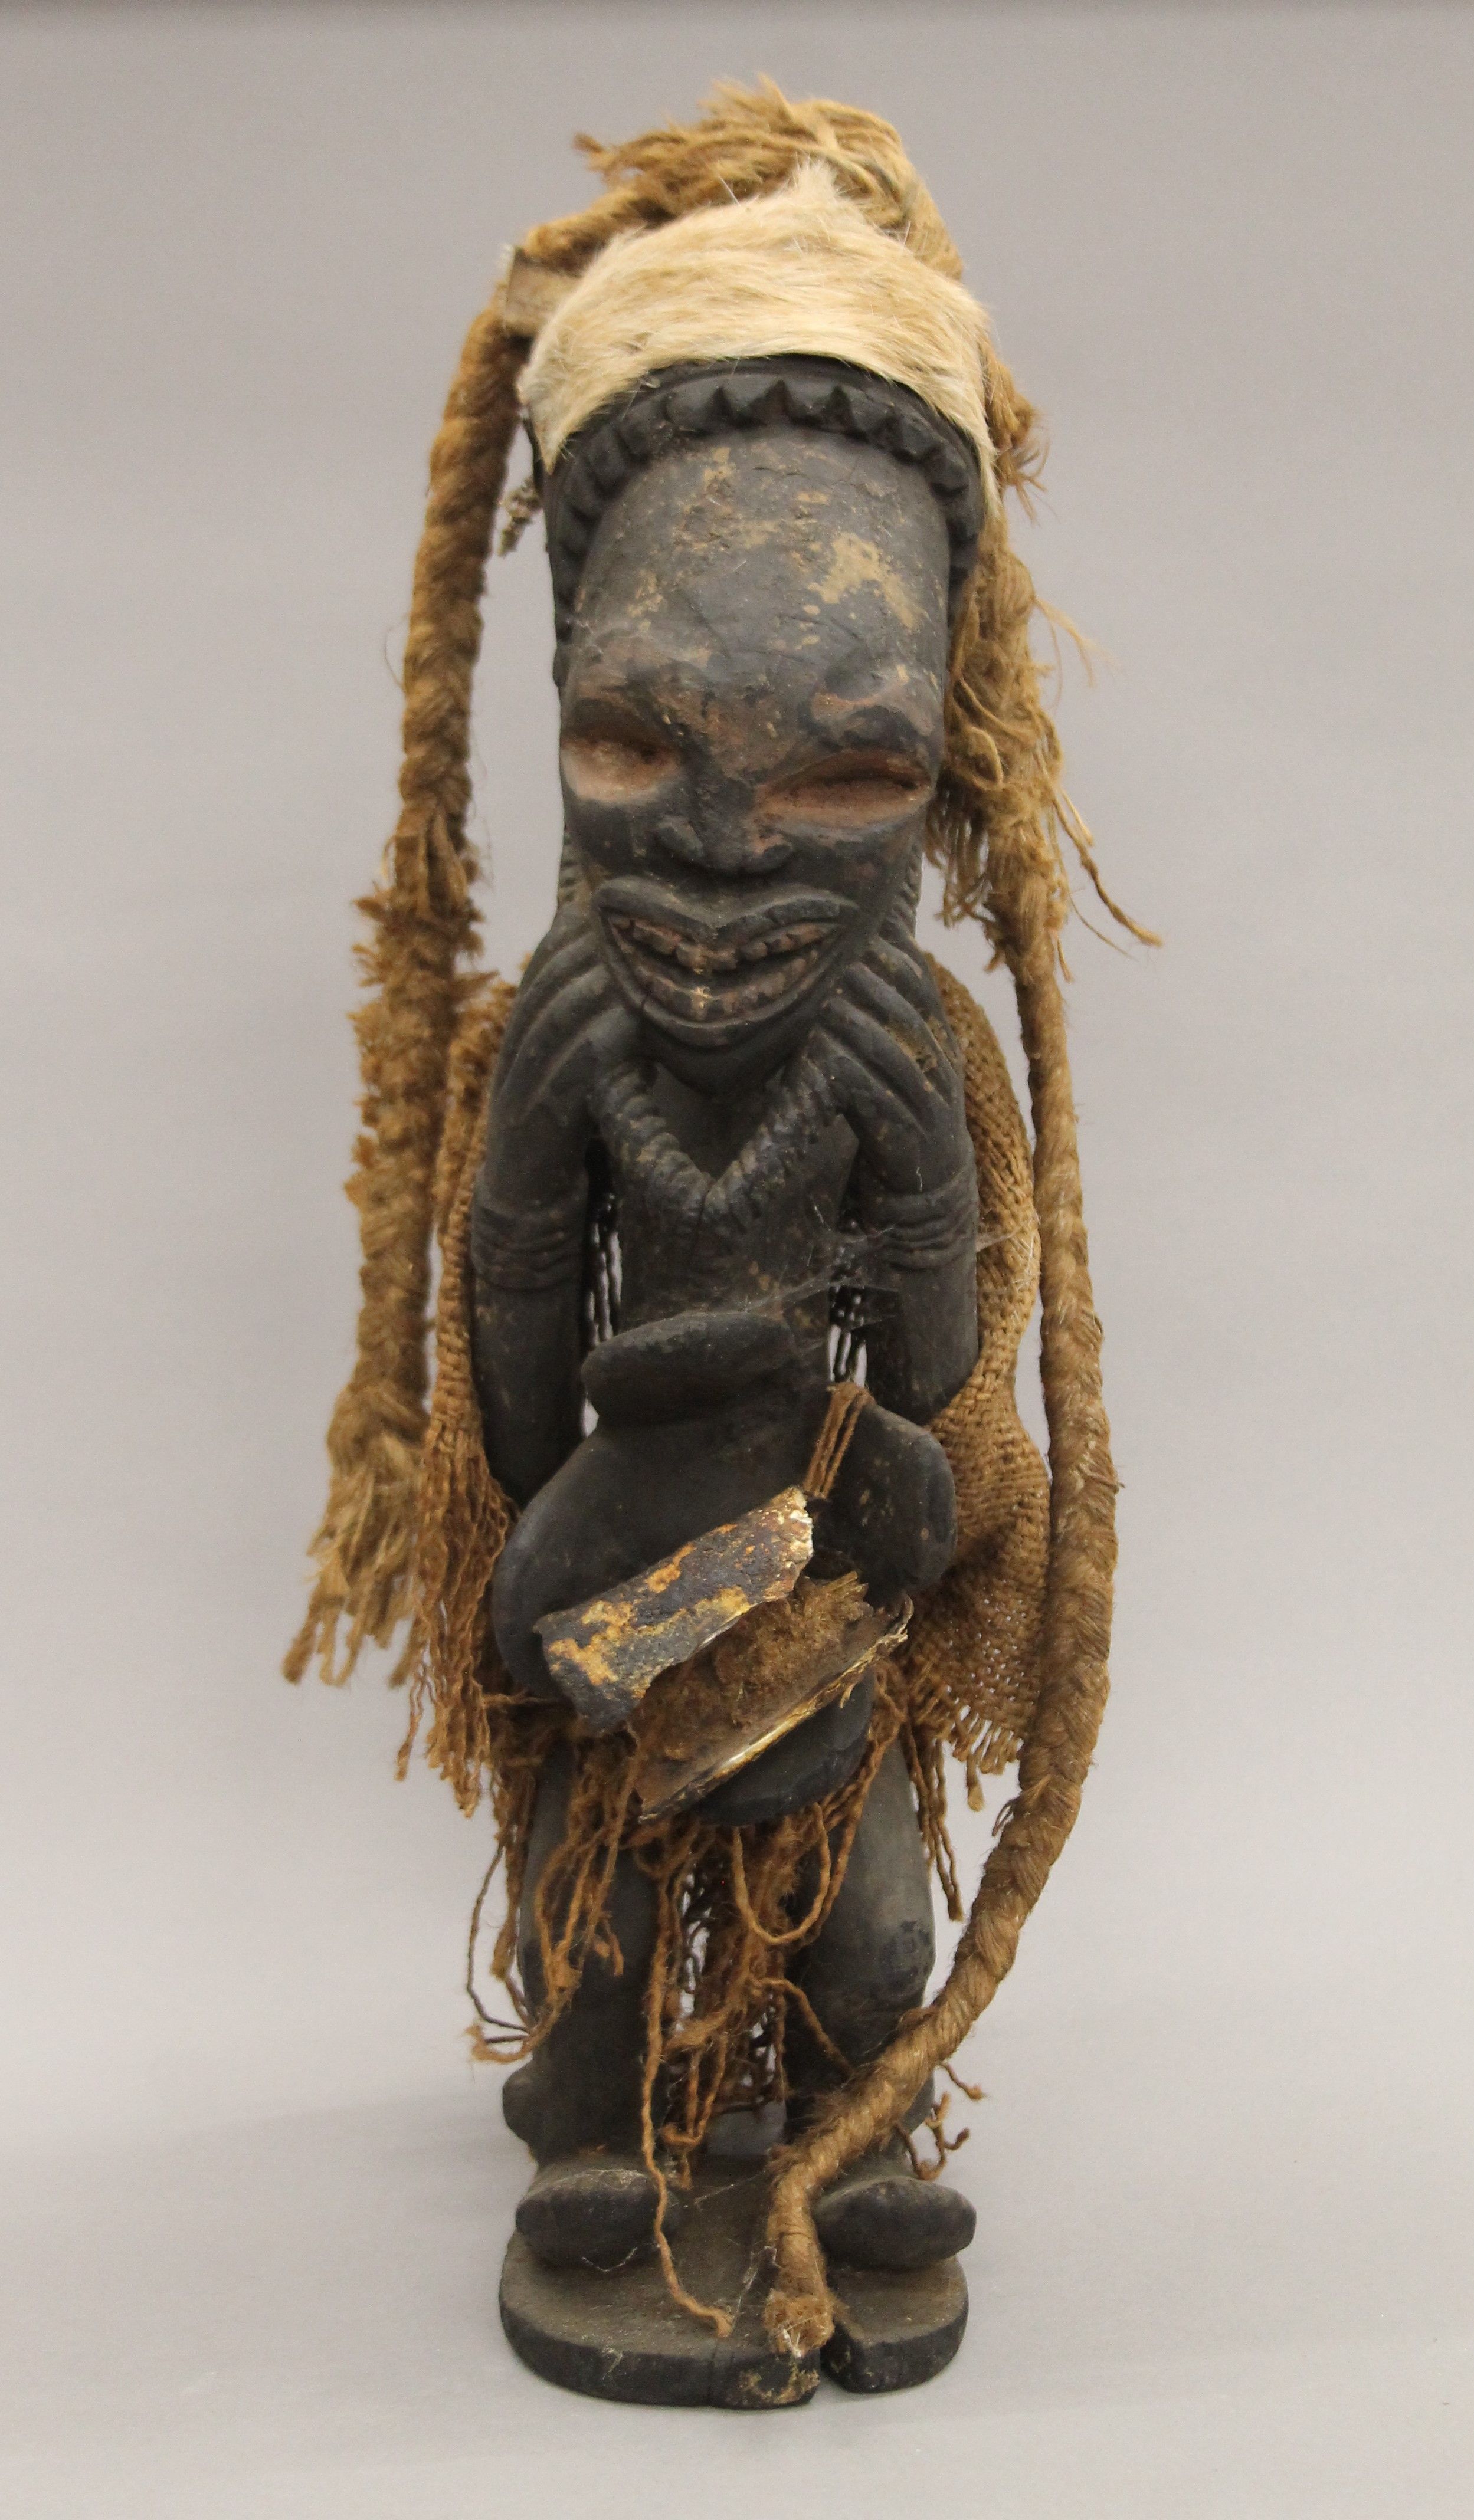 An African tribal wooden figure. 56 cm high.